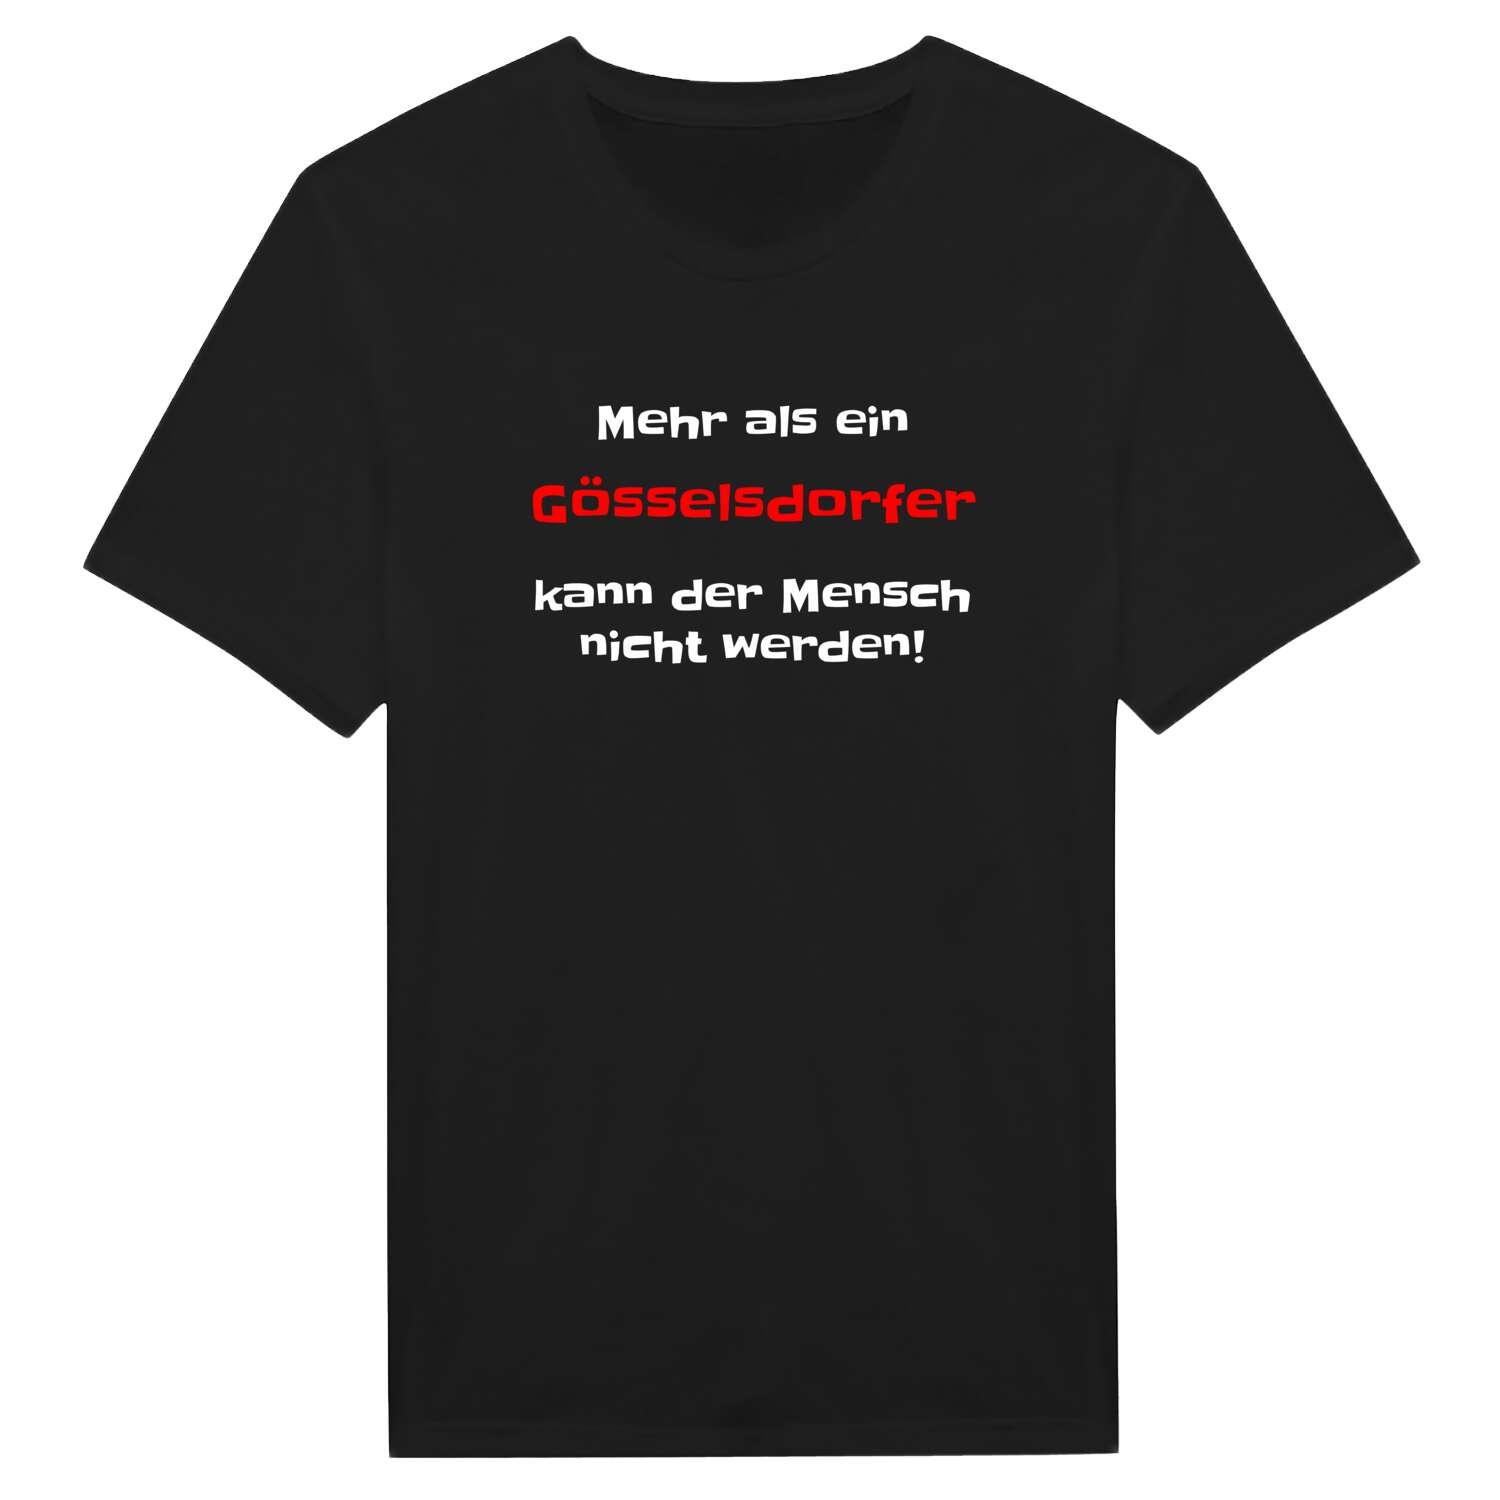 Gösselsdorf T-Shirt »Mehr als ein«